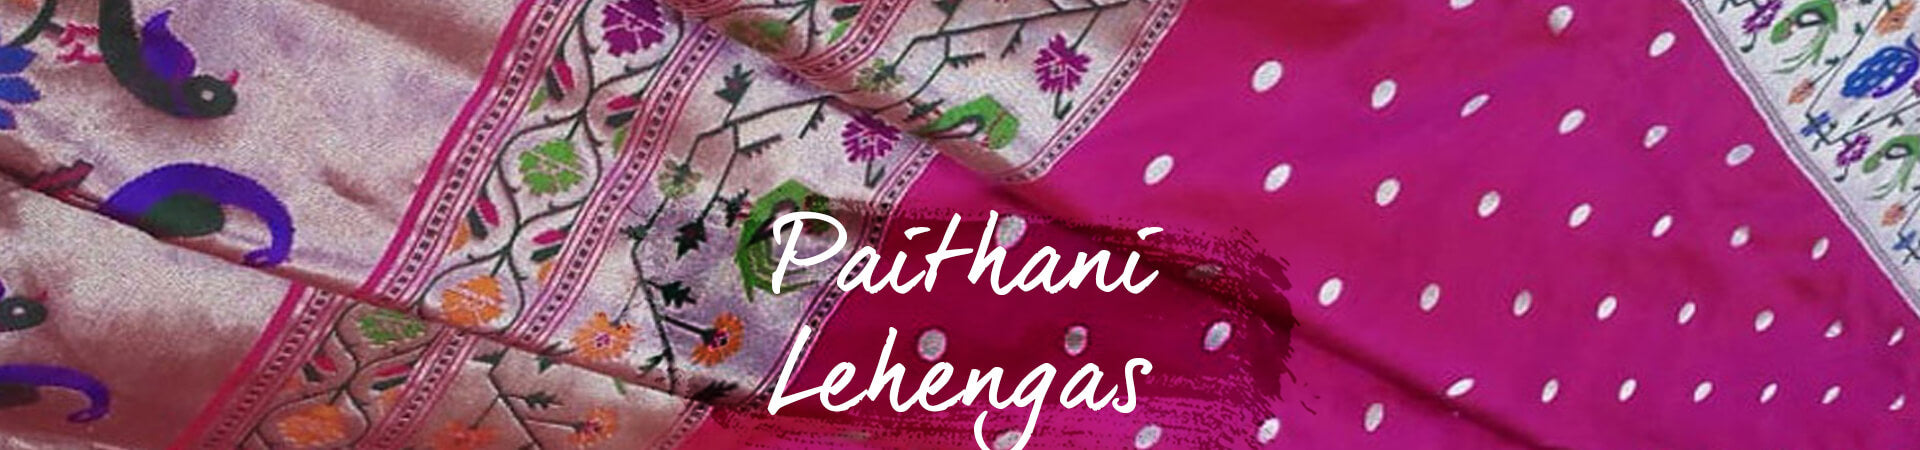 paithani lehenga choli online